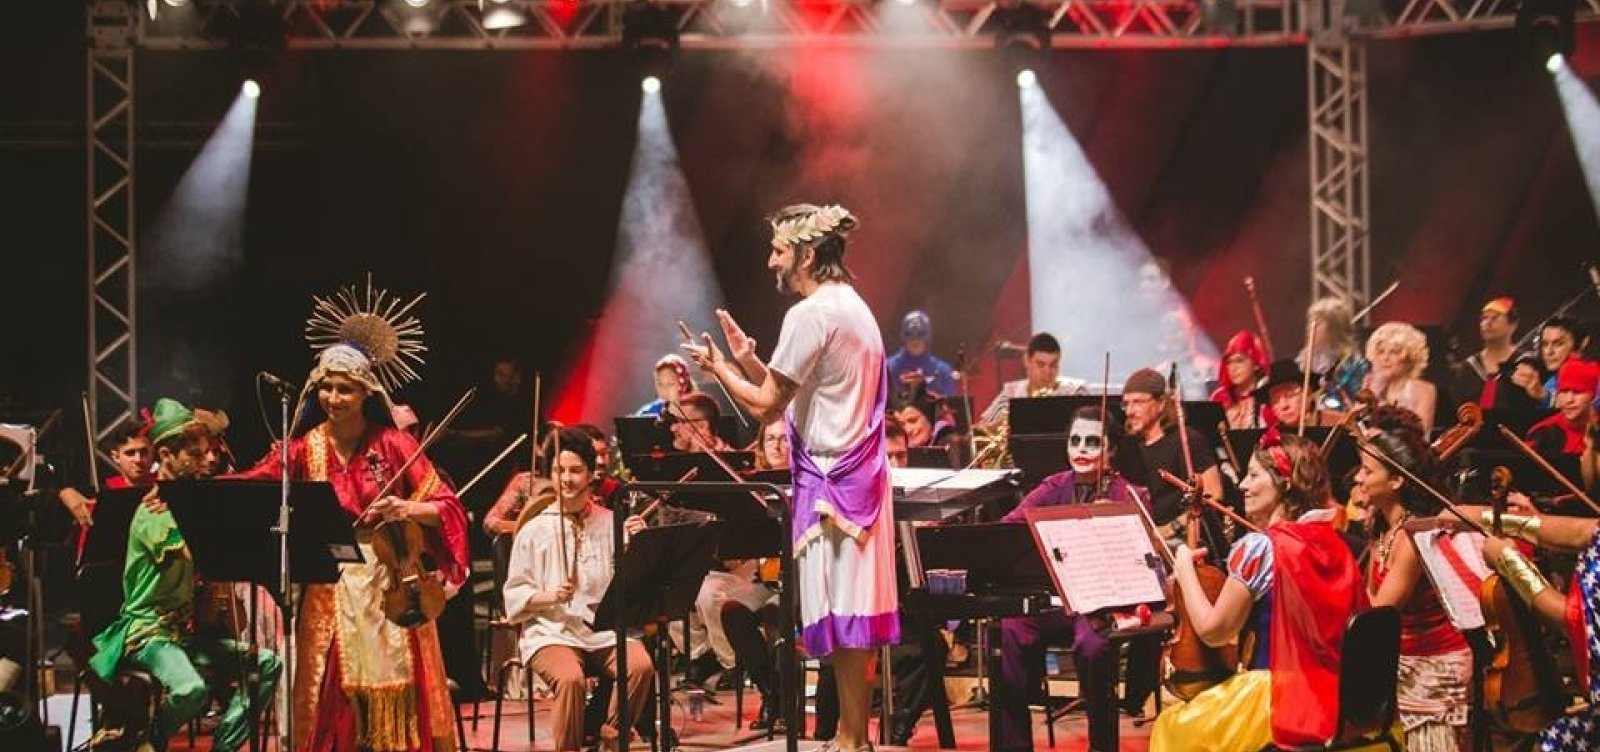 Osba realiza edição especial do Cine Concerto no aniversário de Salvador